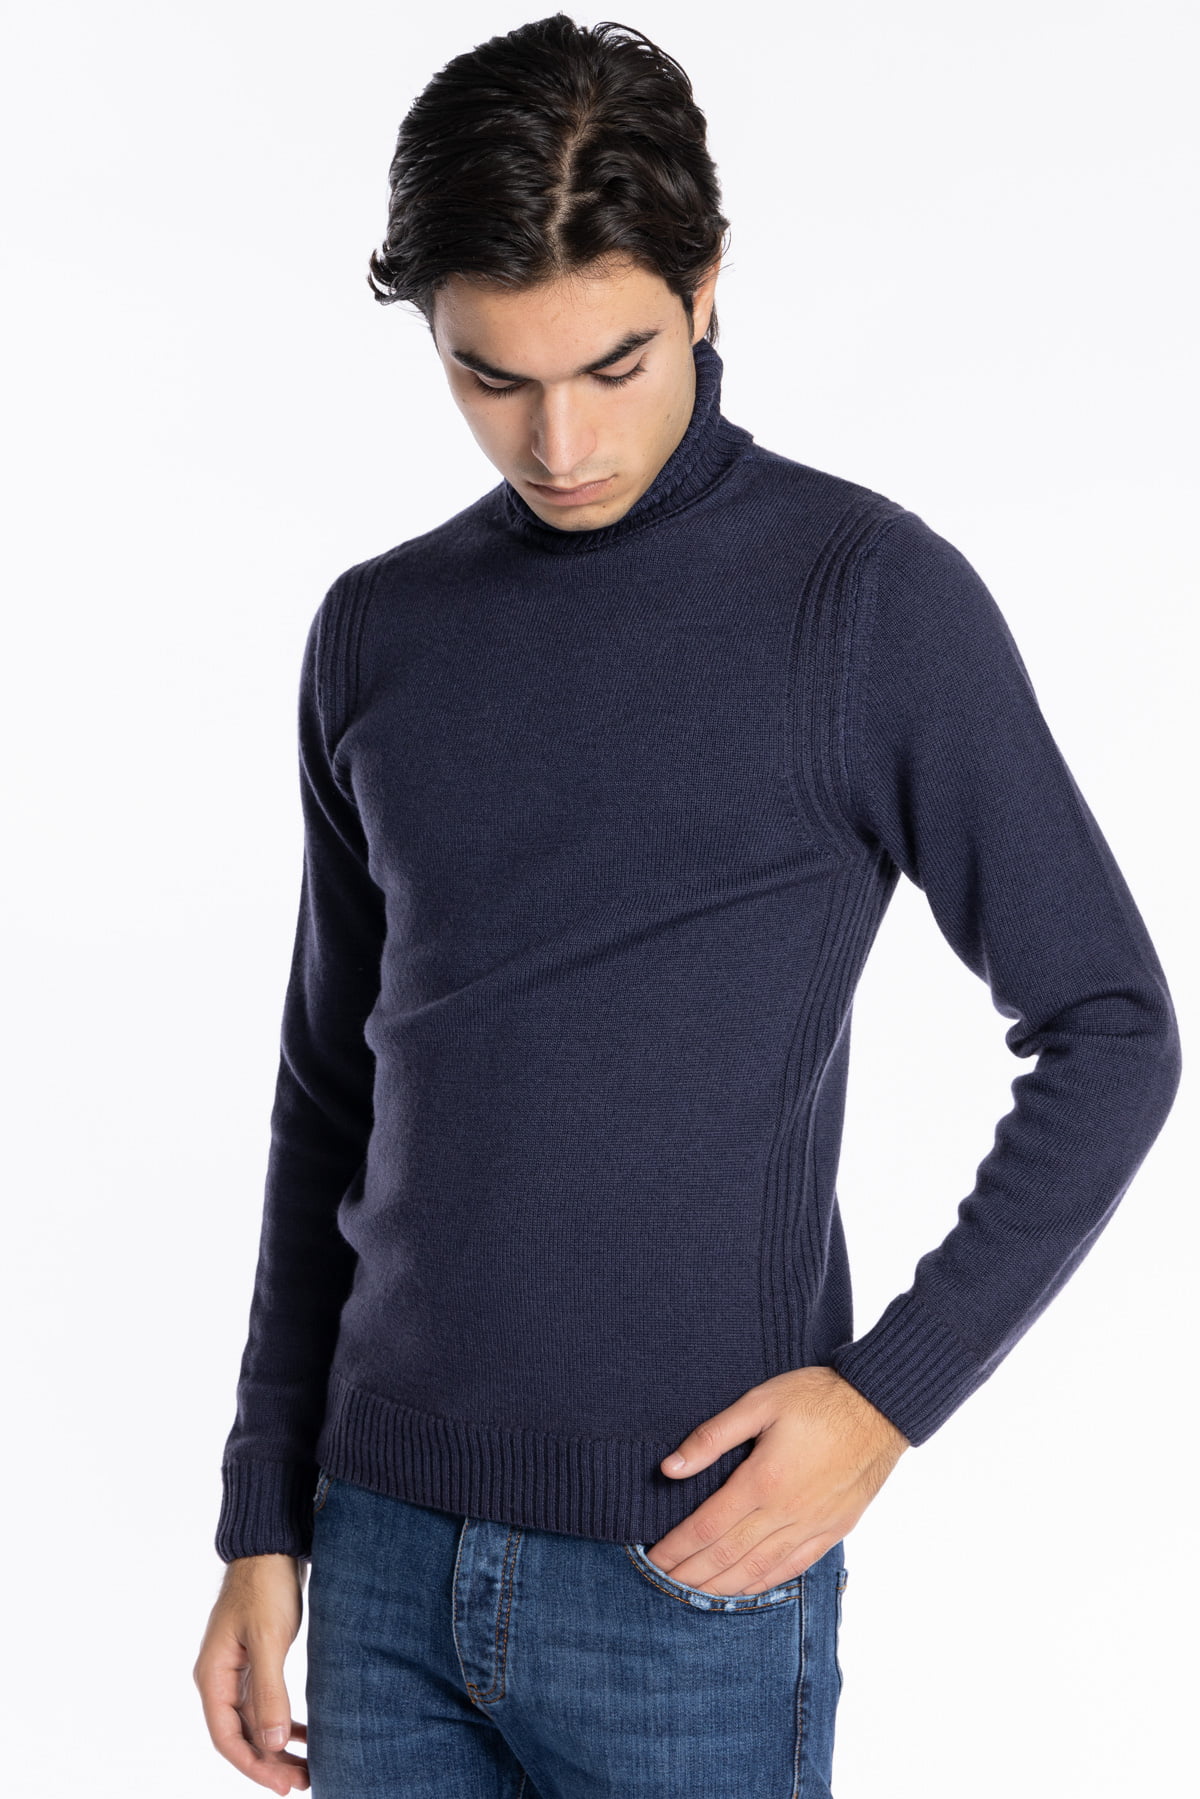 Maglione da uomo collo alto Blu pura lana con trame interne ai lati maniche lunghe